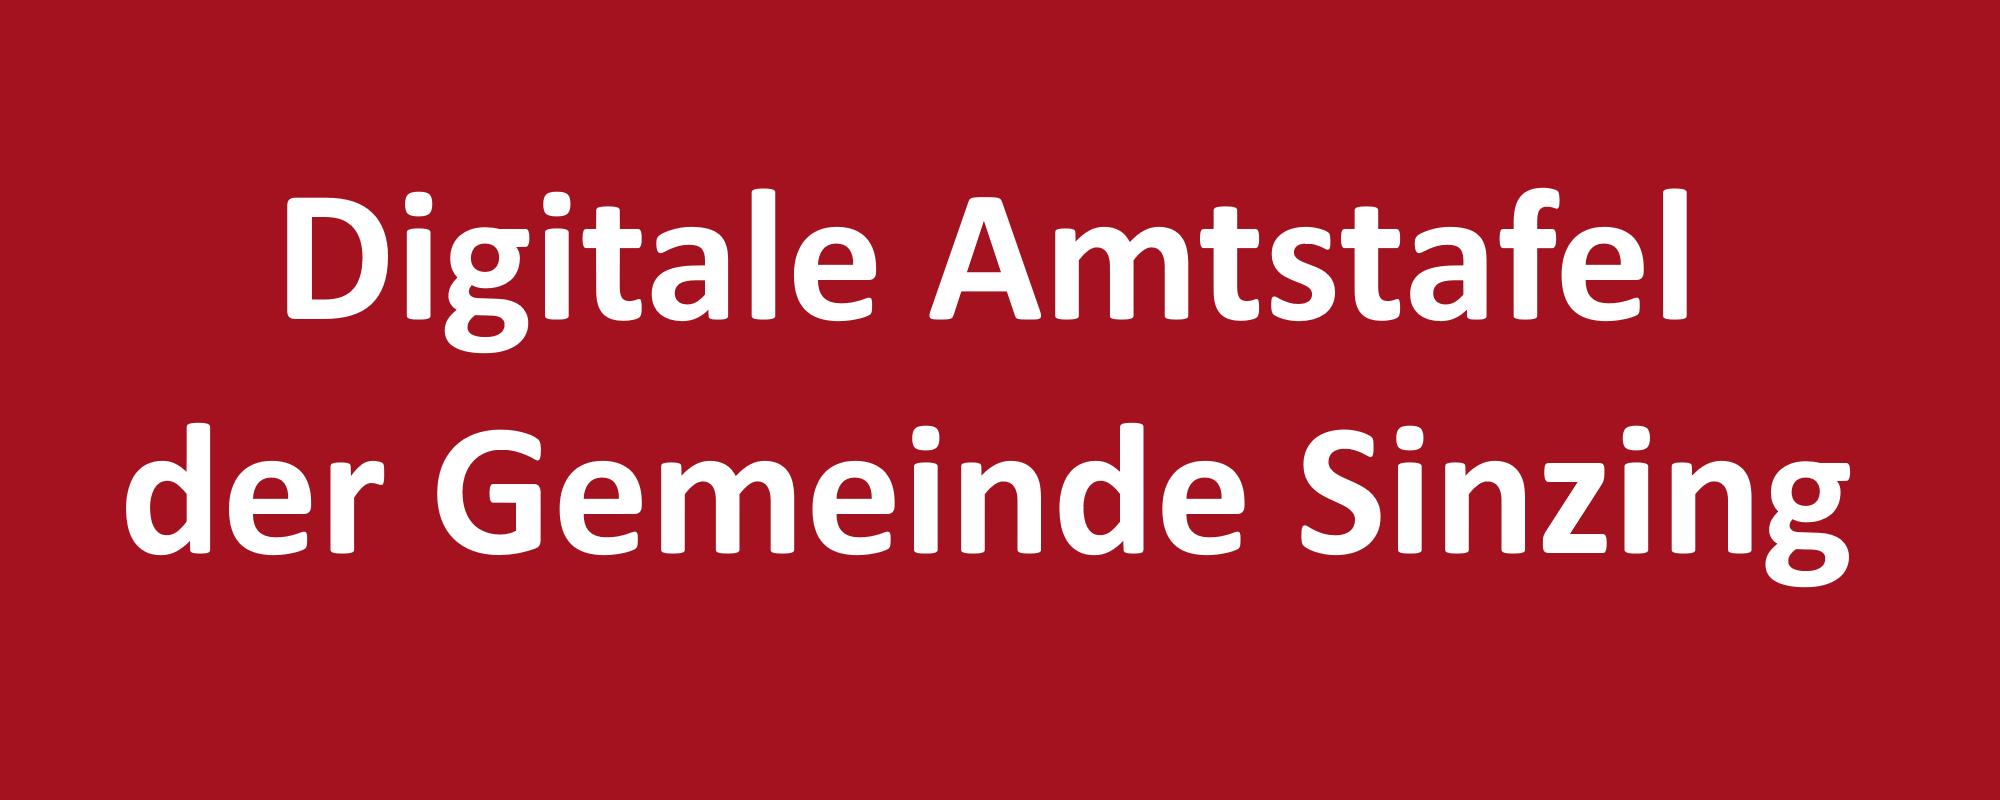 Digitale Amtstafel